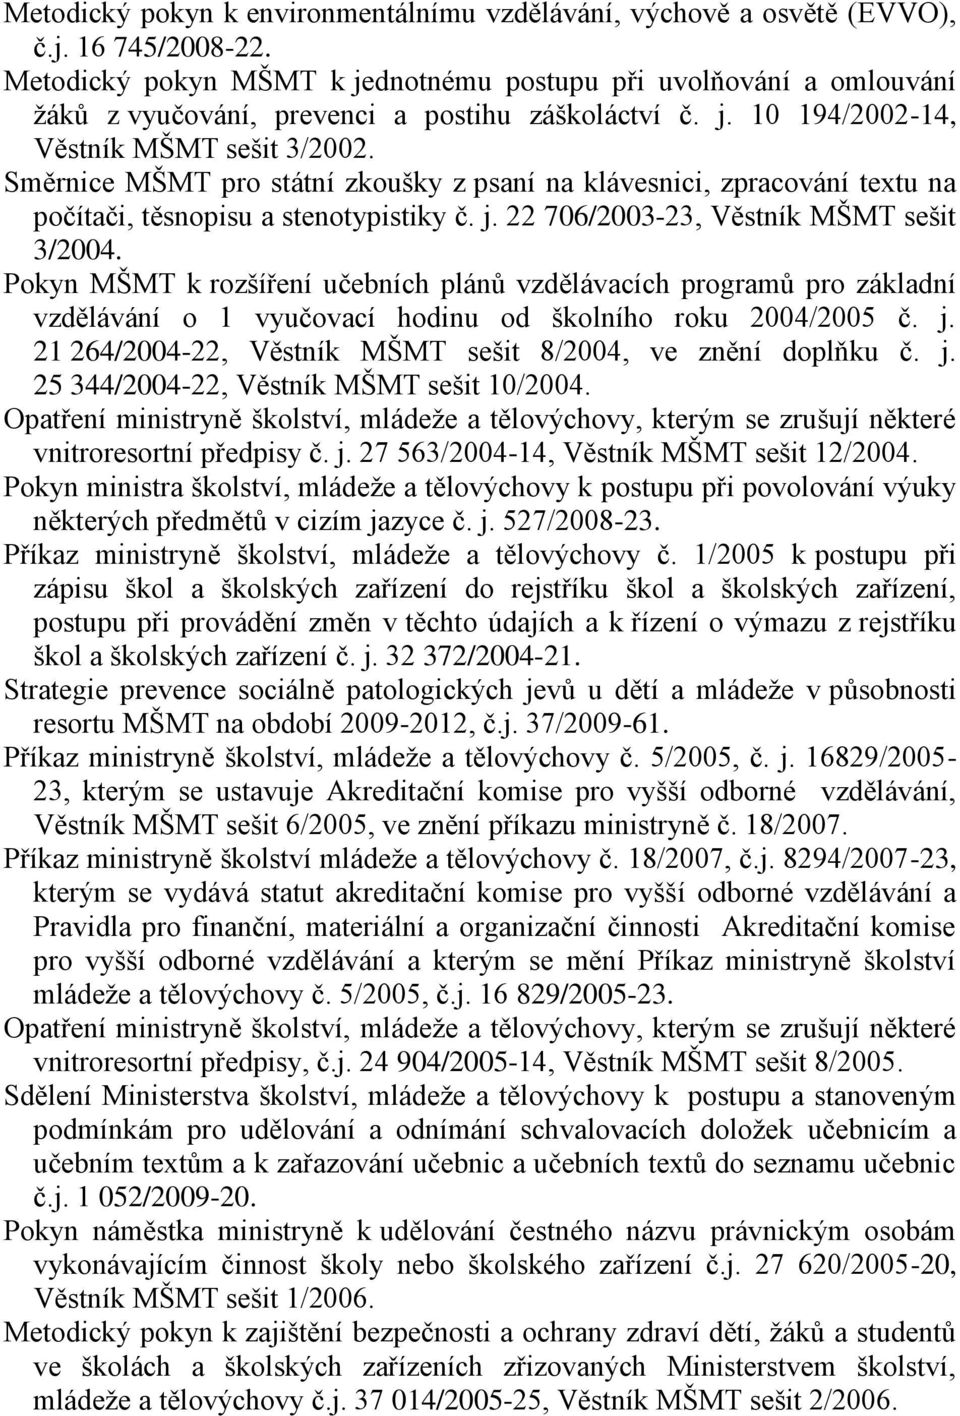 Směrnice MŠMT pro státní zkoušky z psaní na klávesnici, zpracování textu na počítači, těsnopisu a stenotypistiky č. j. 22 706/2003-23, Věstník MŠMT sešit 3/2004.